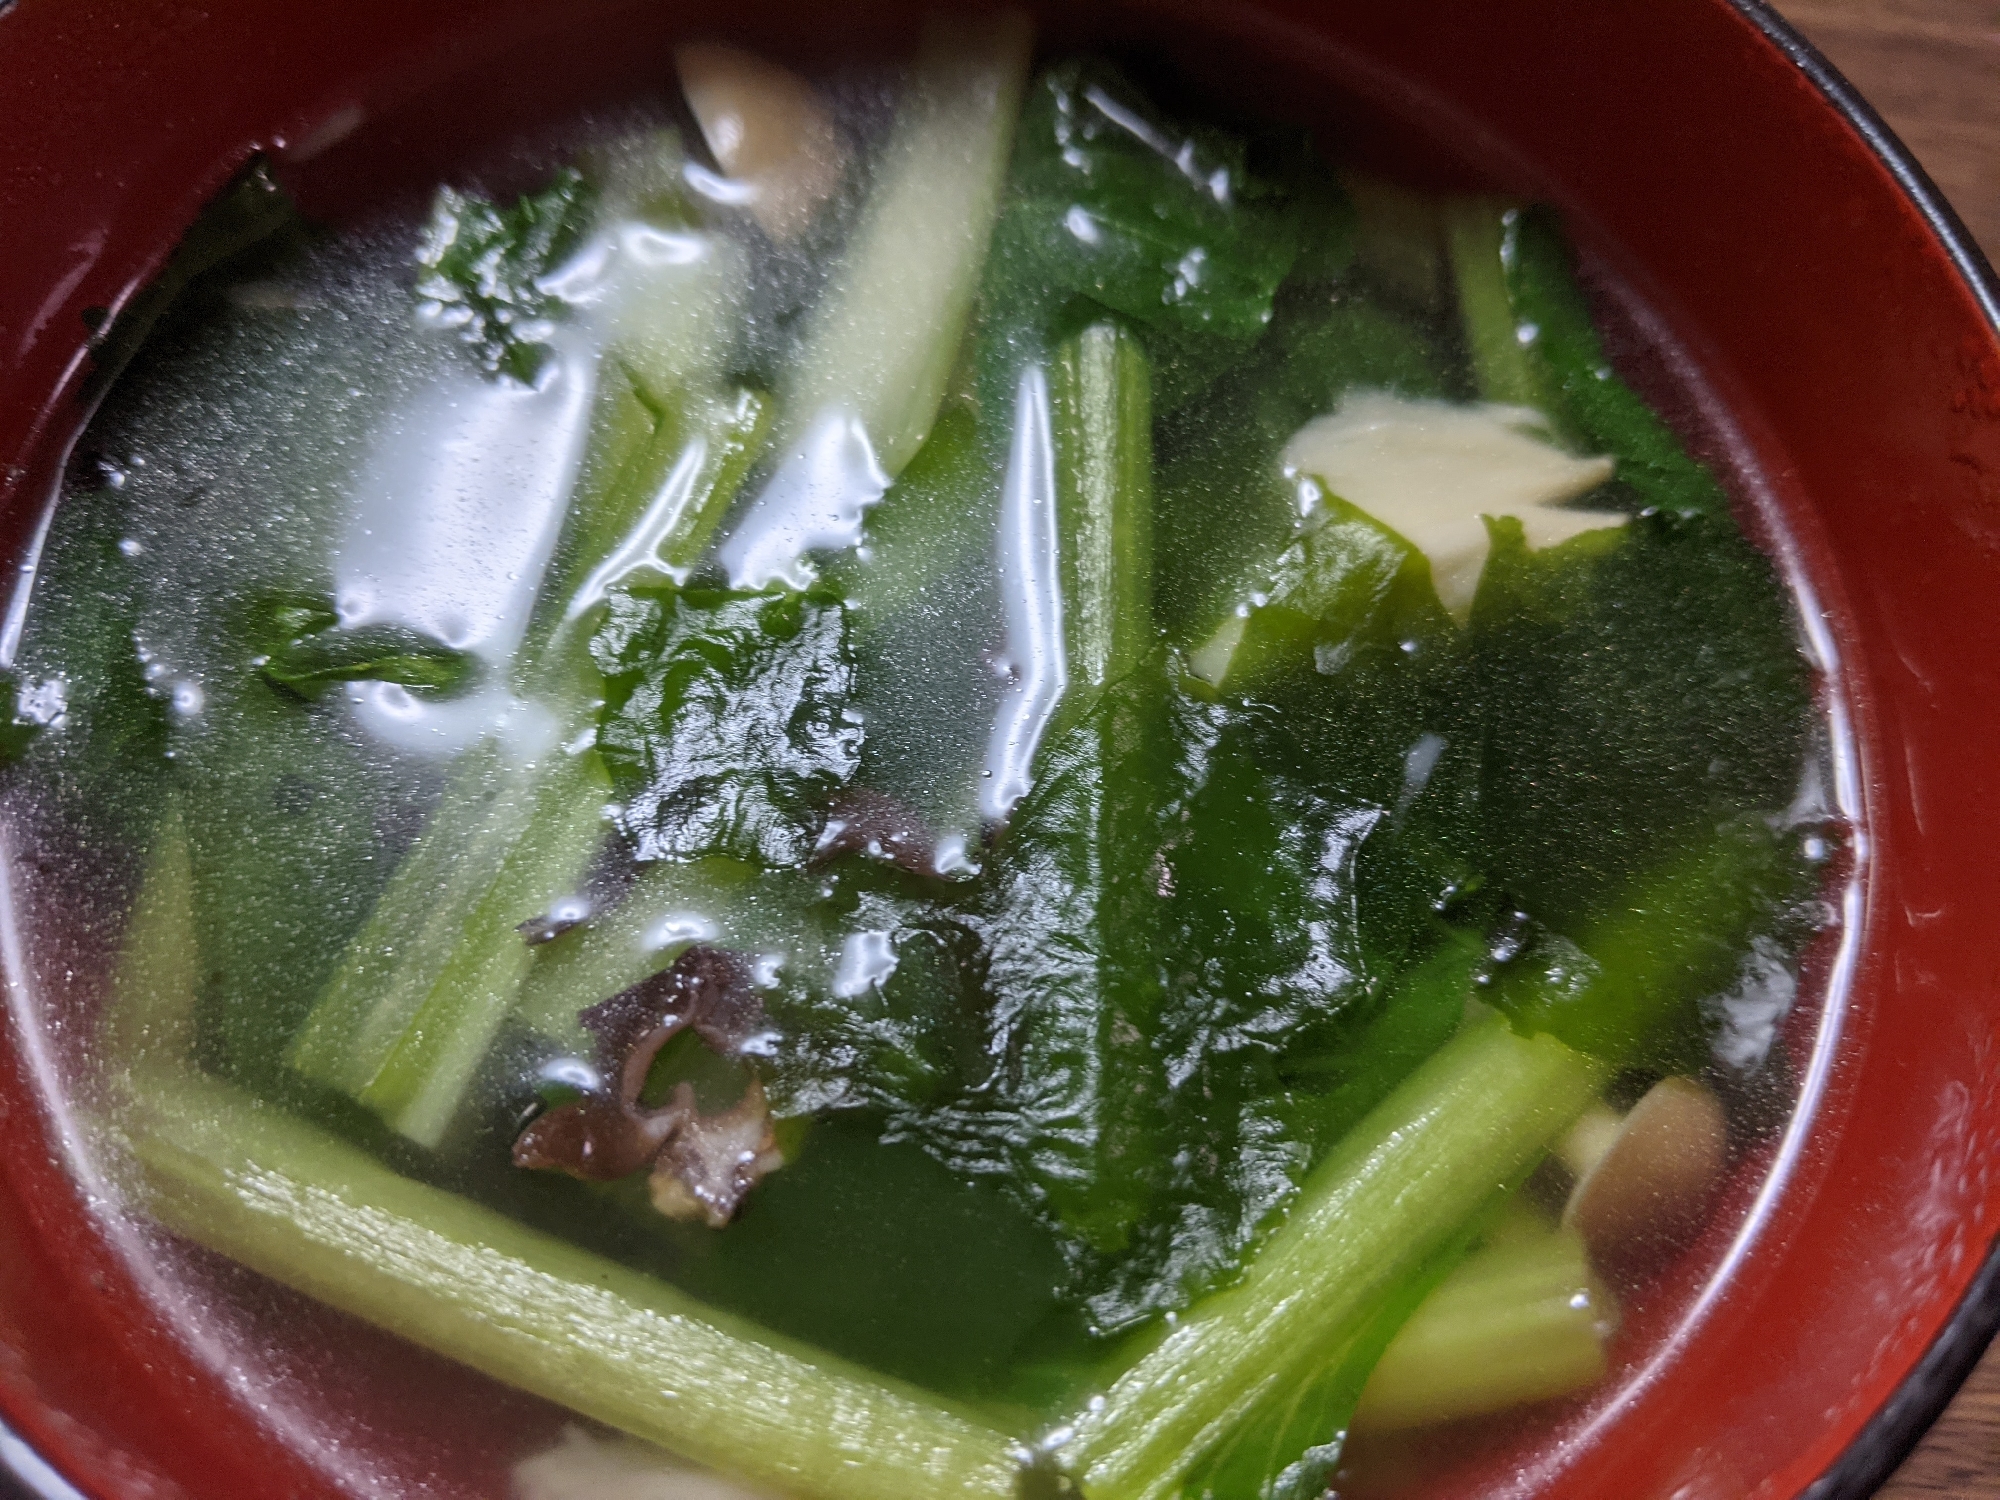 小松菜スープ